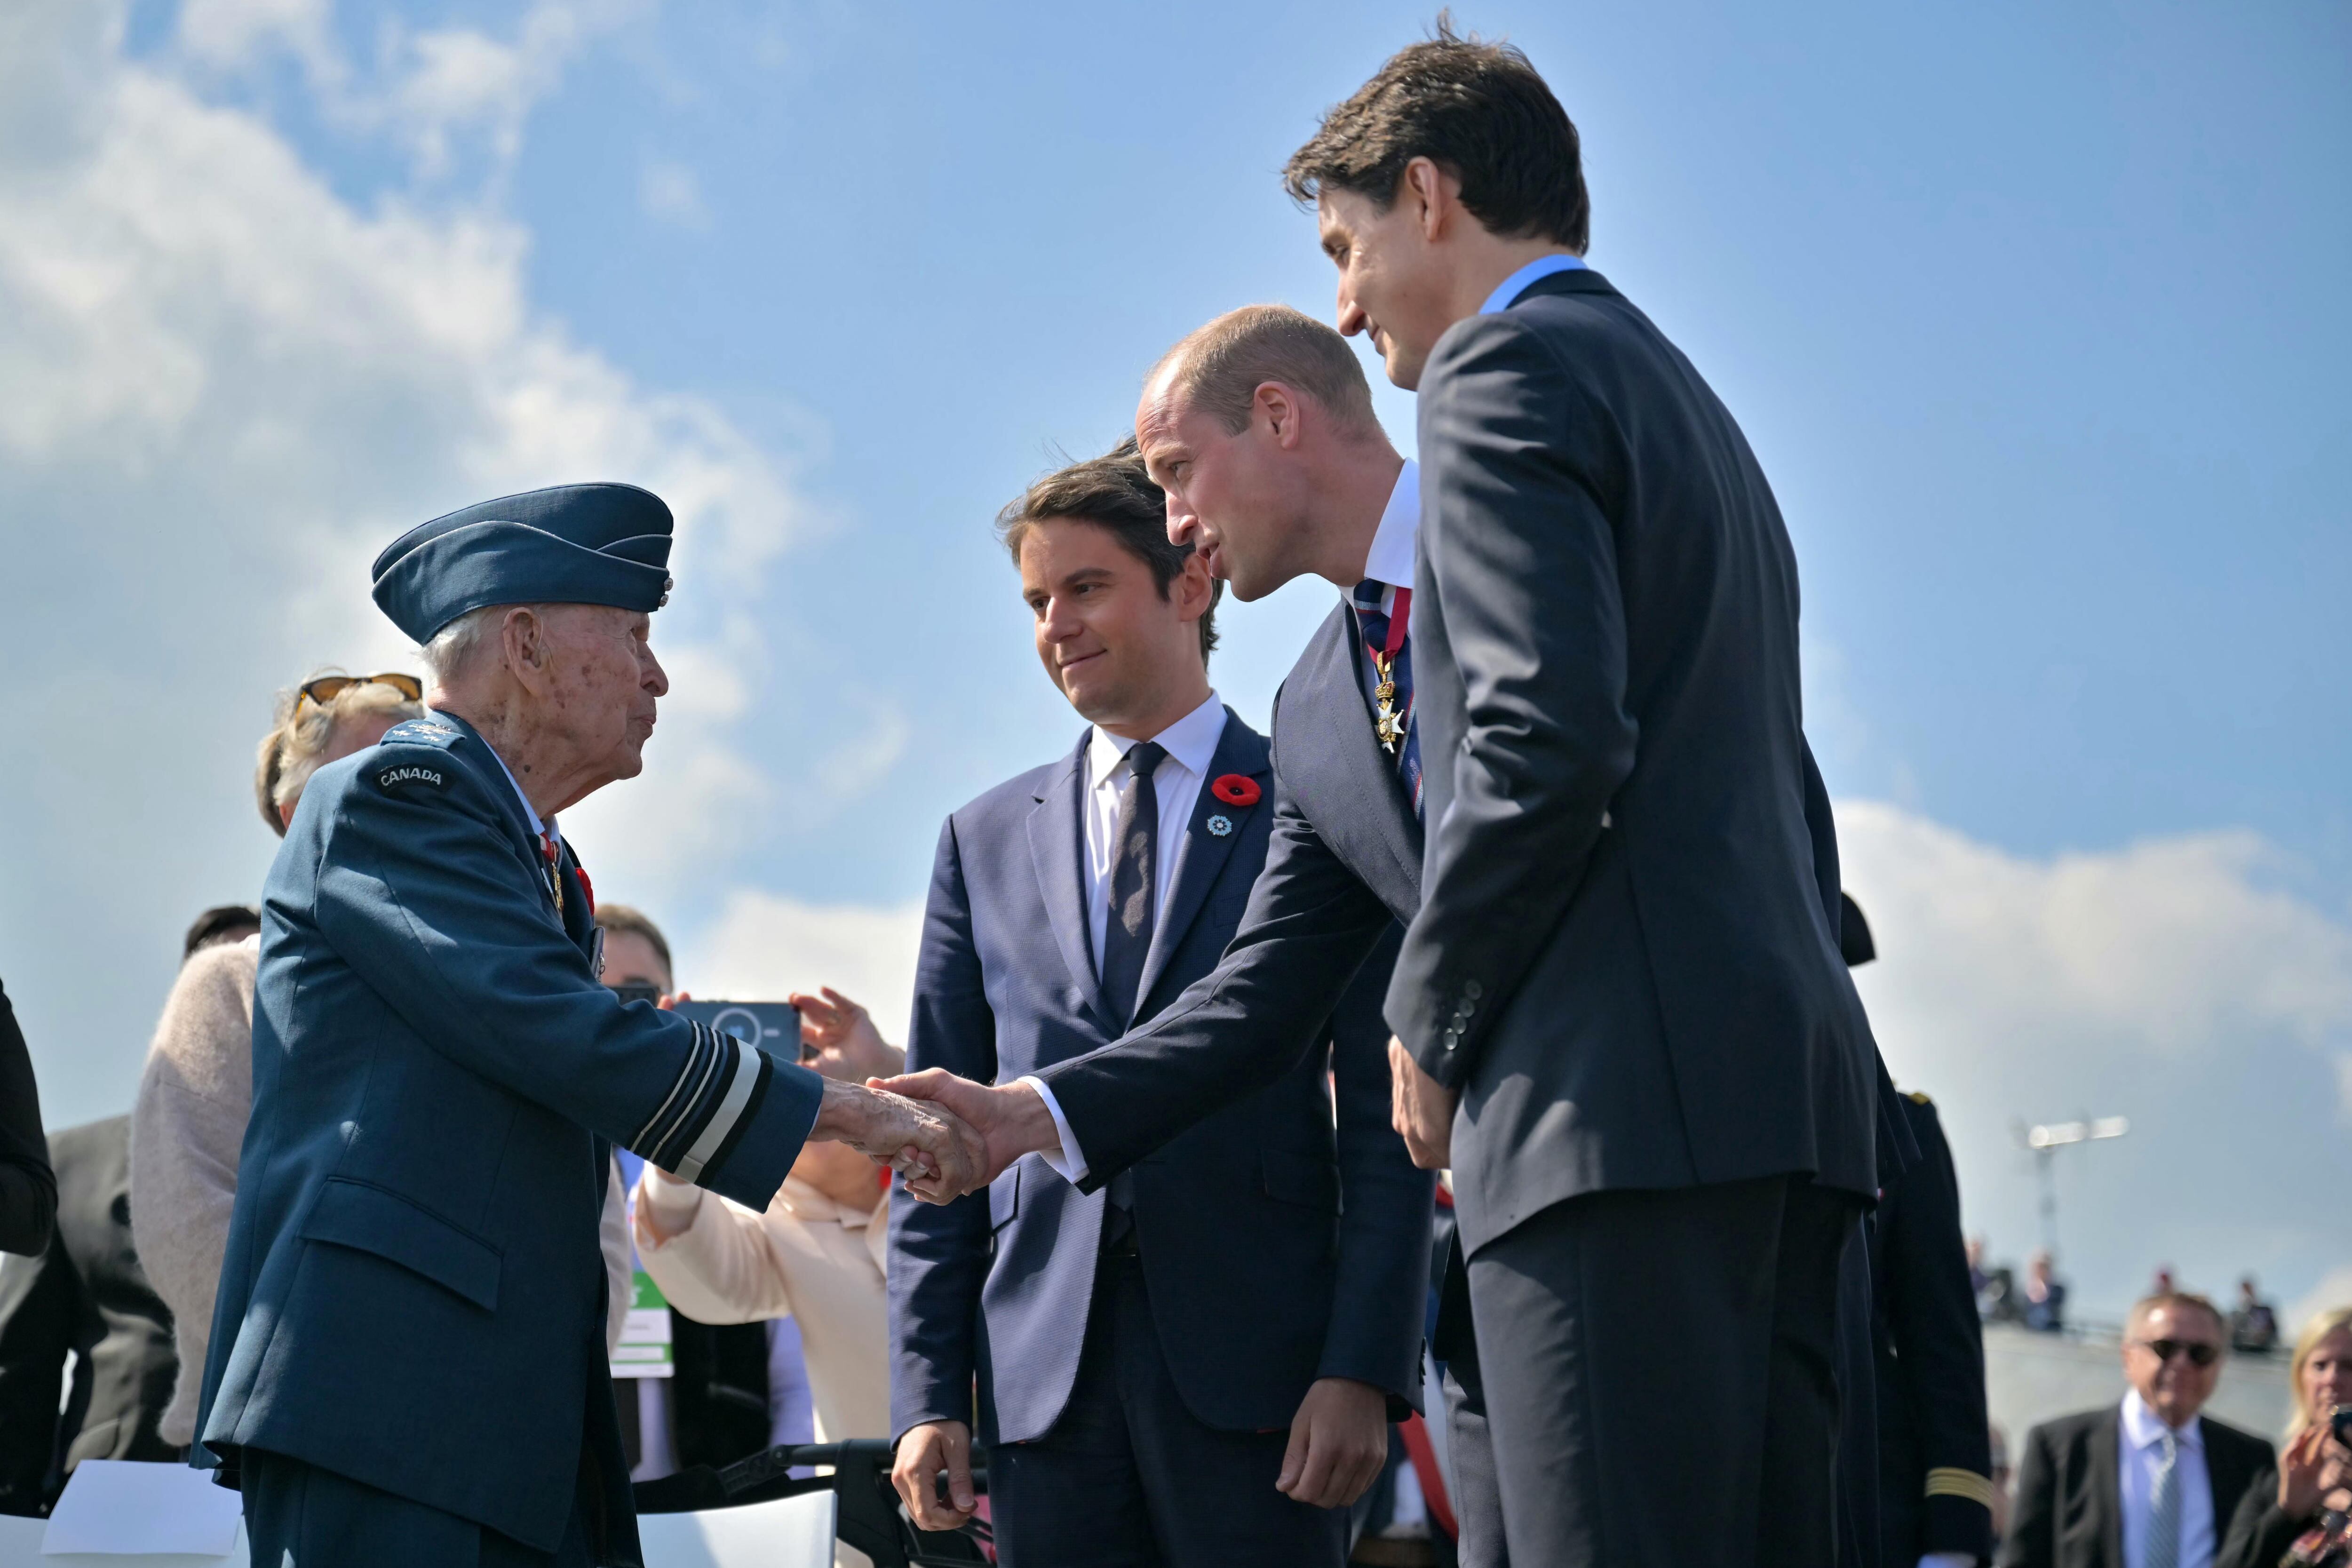 El príncipe Guillermo de Gales (segundo por la derecha) saluda a un veterano canadiense (a la izquierda), junto al primer ministro francés, Gabriel Attal (segundo por la izquierda), y el canadiense, Justin Trudeau (a la derecha), mientras asisten a la ceremonia conmemorativa canadiense, en el Juno Beach Centre, cerca de la localidad de Courseulles-sur-Mer, al noroeste de Francia.